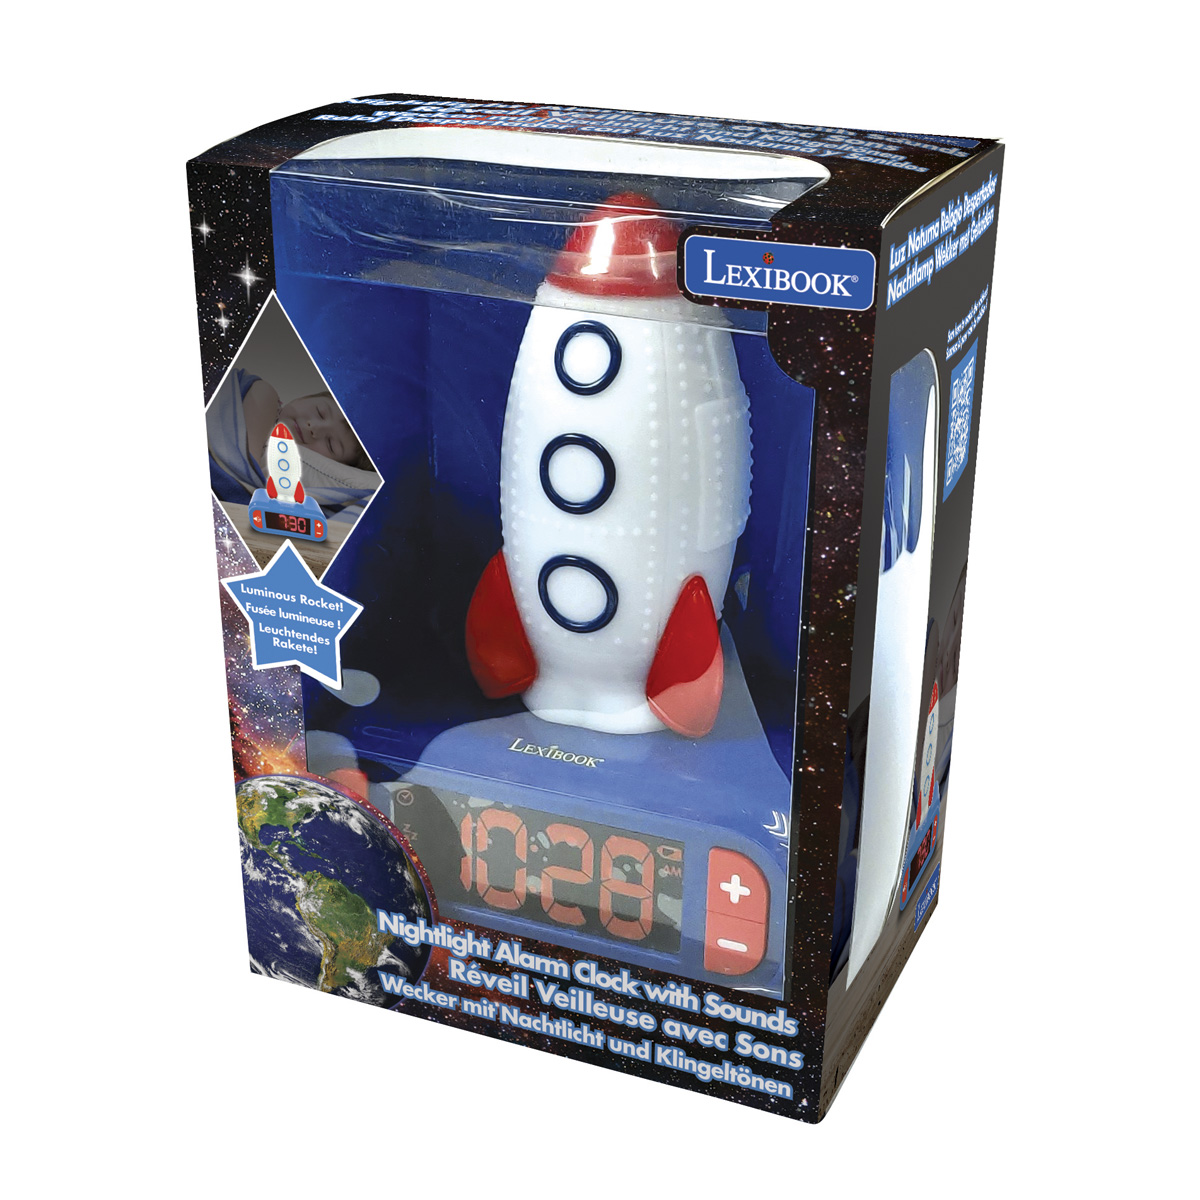 LEXIBOOK mit Rakete 3D Wecker Nachtlicht